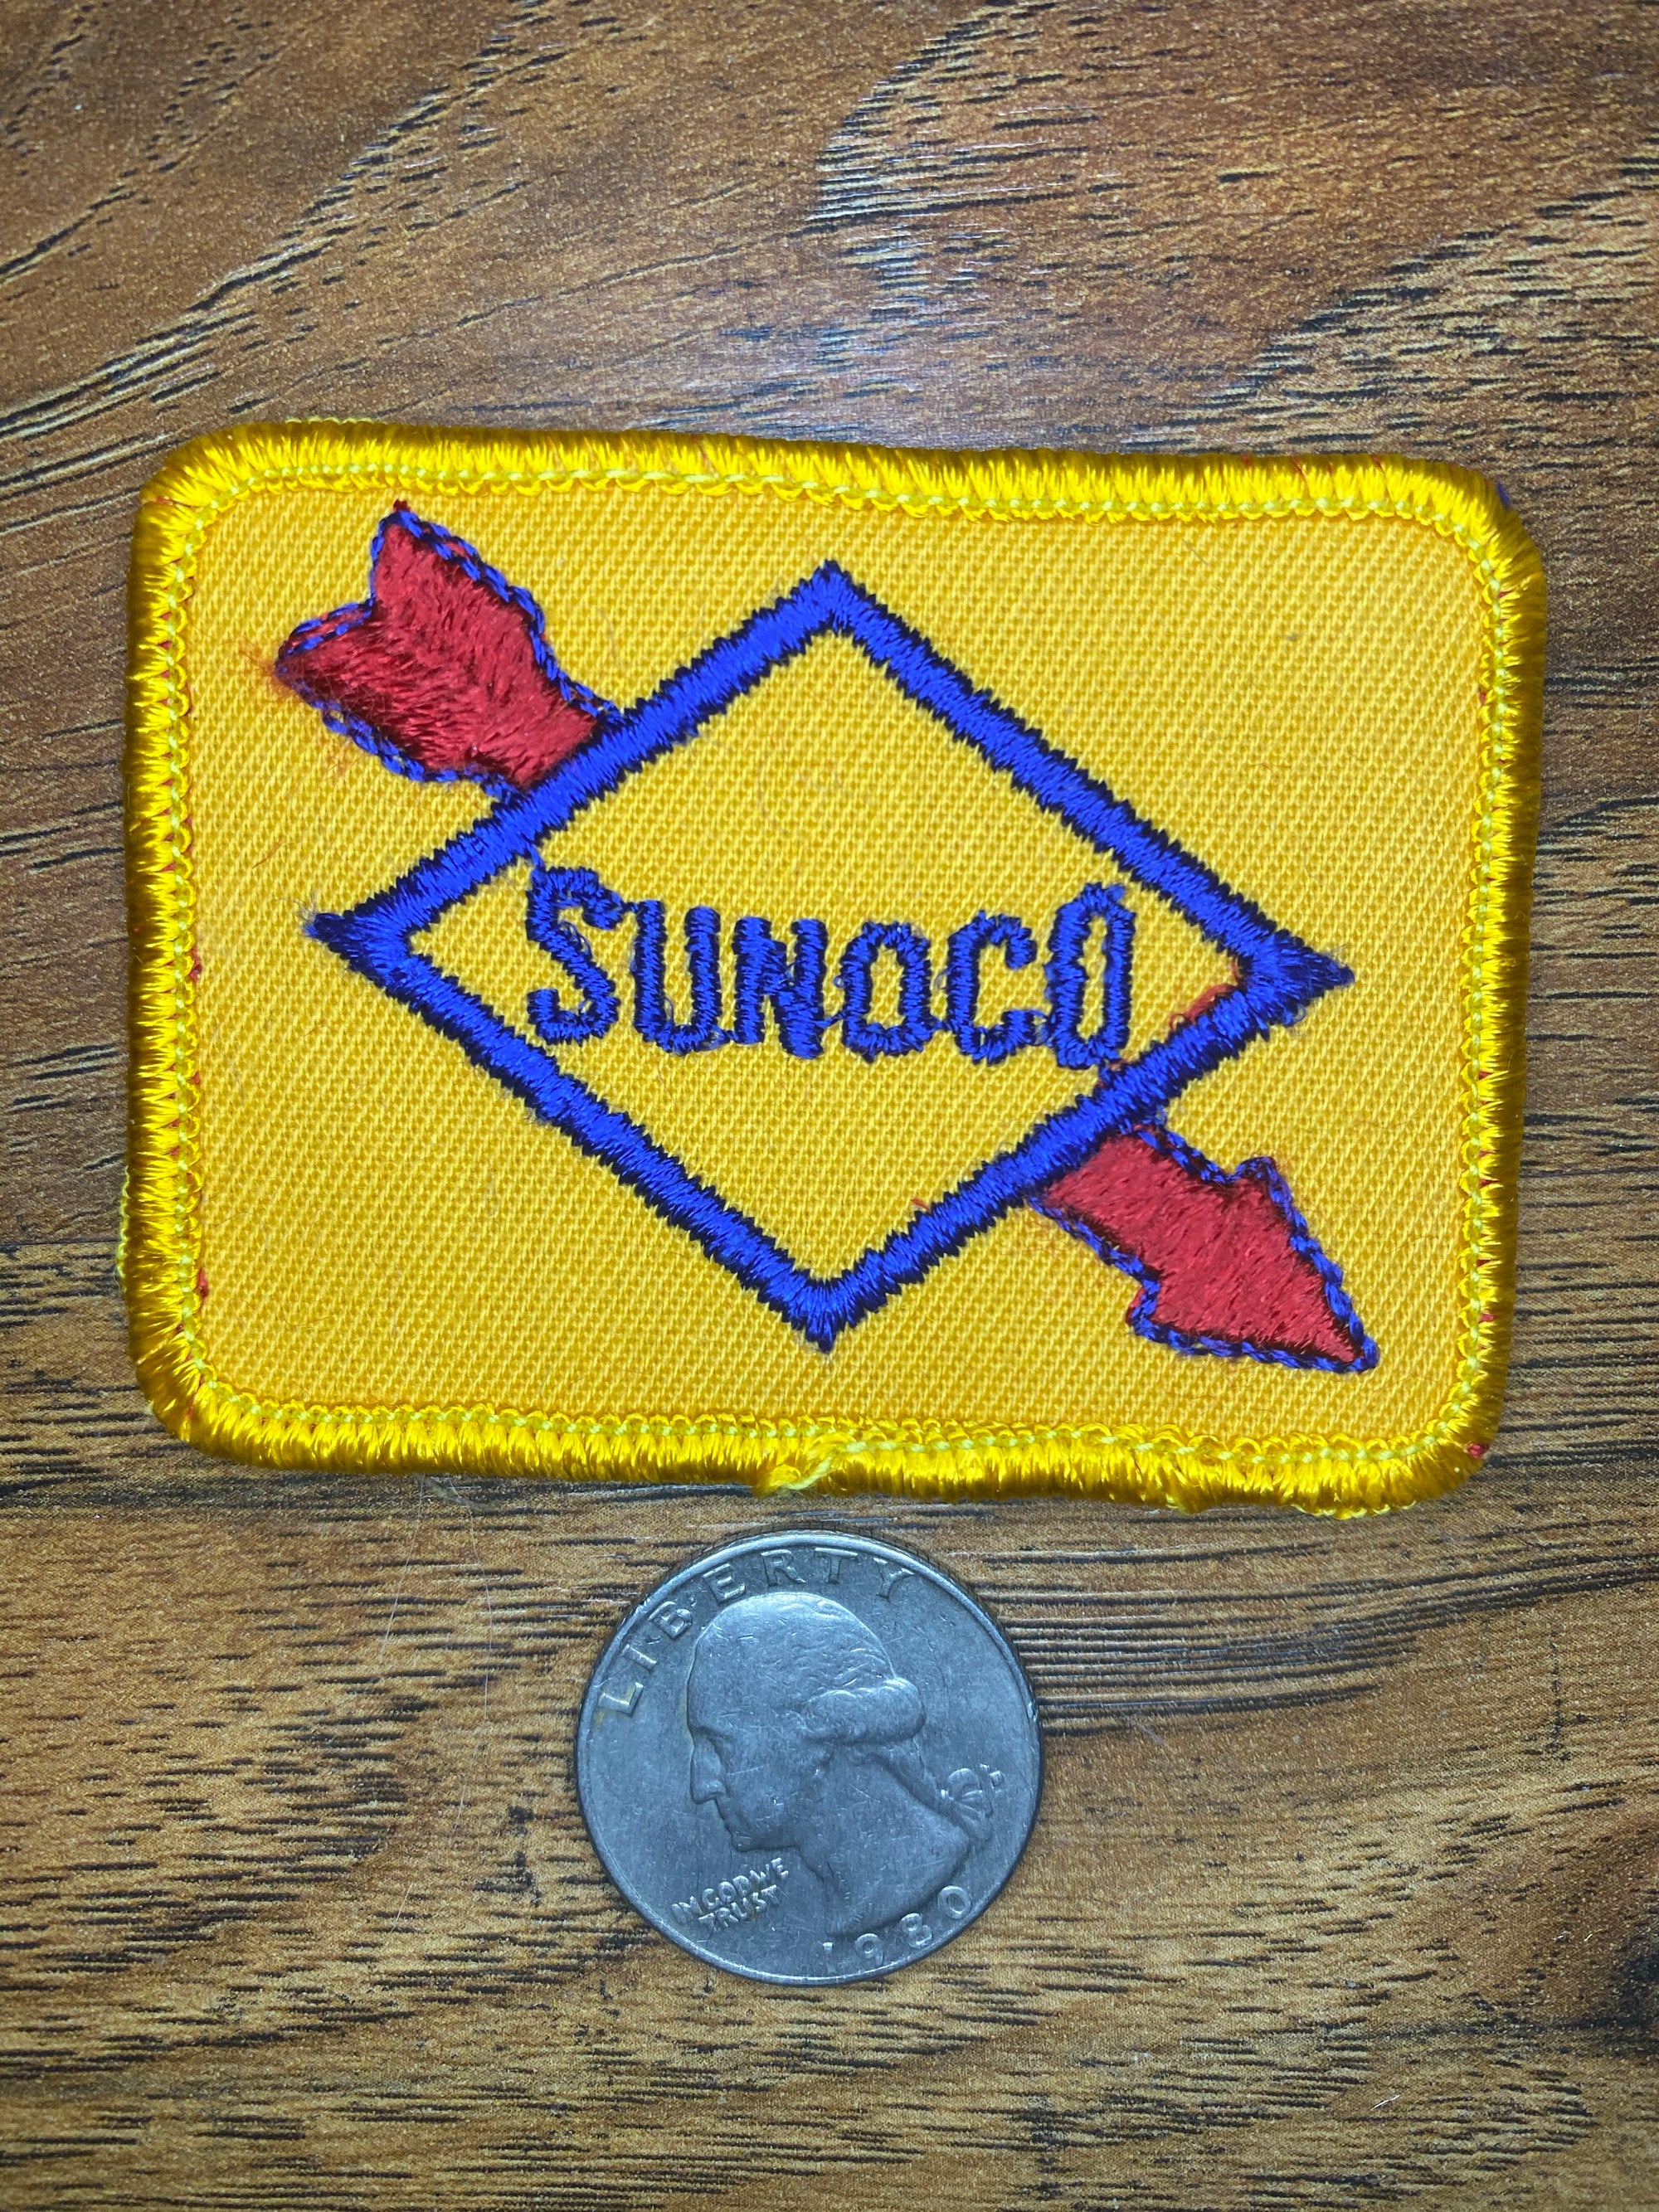 Vintage Sunoco